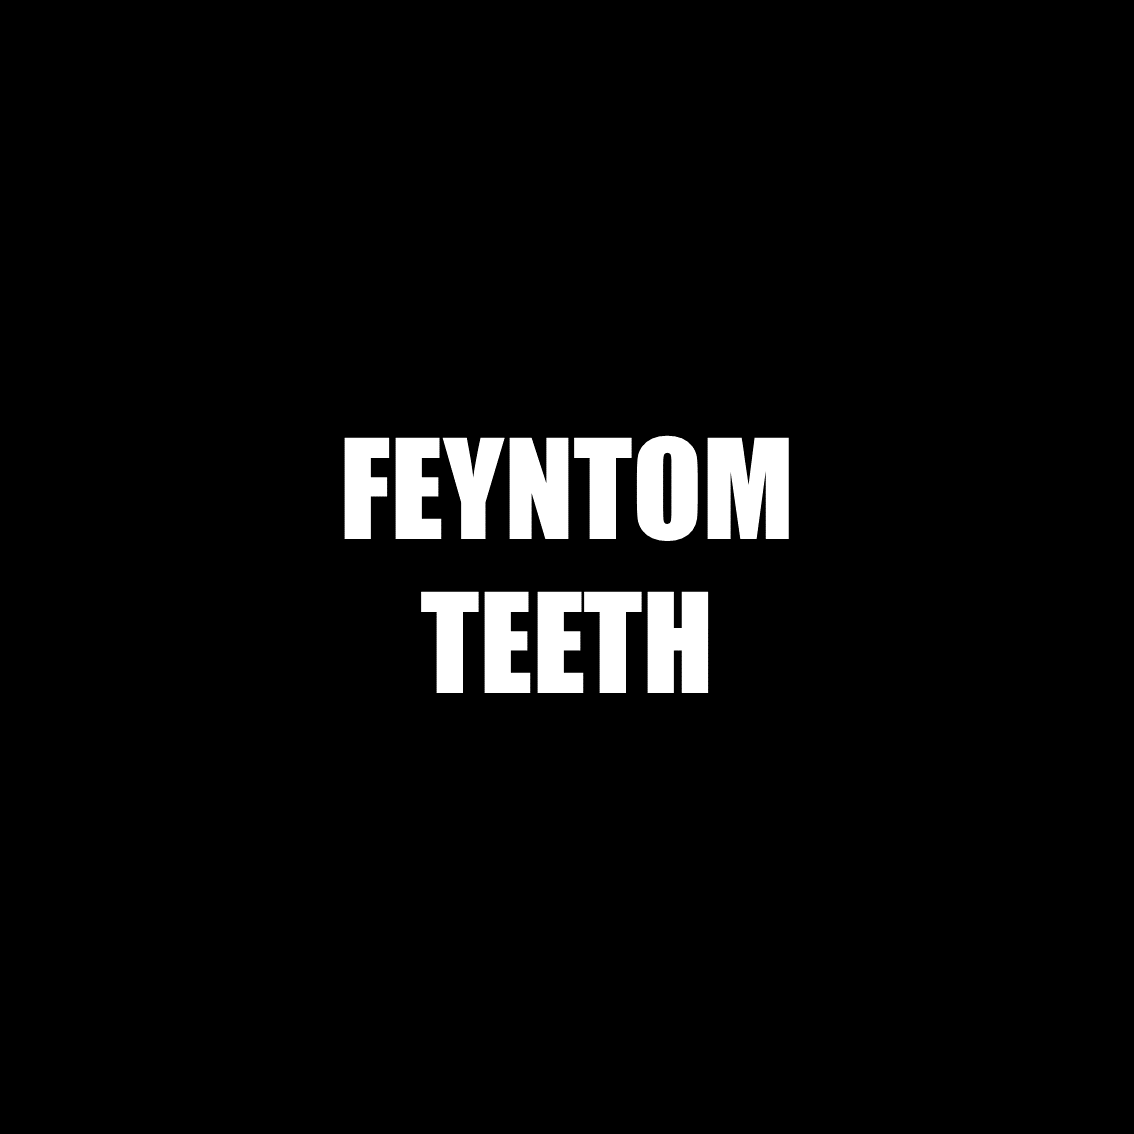 Feyntom Teeth